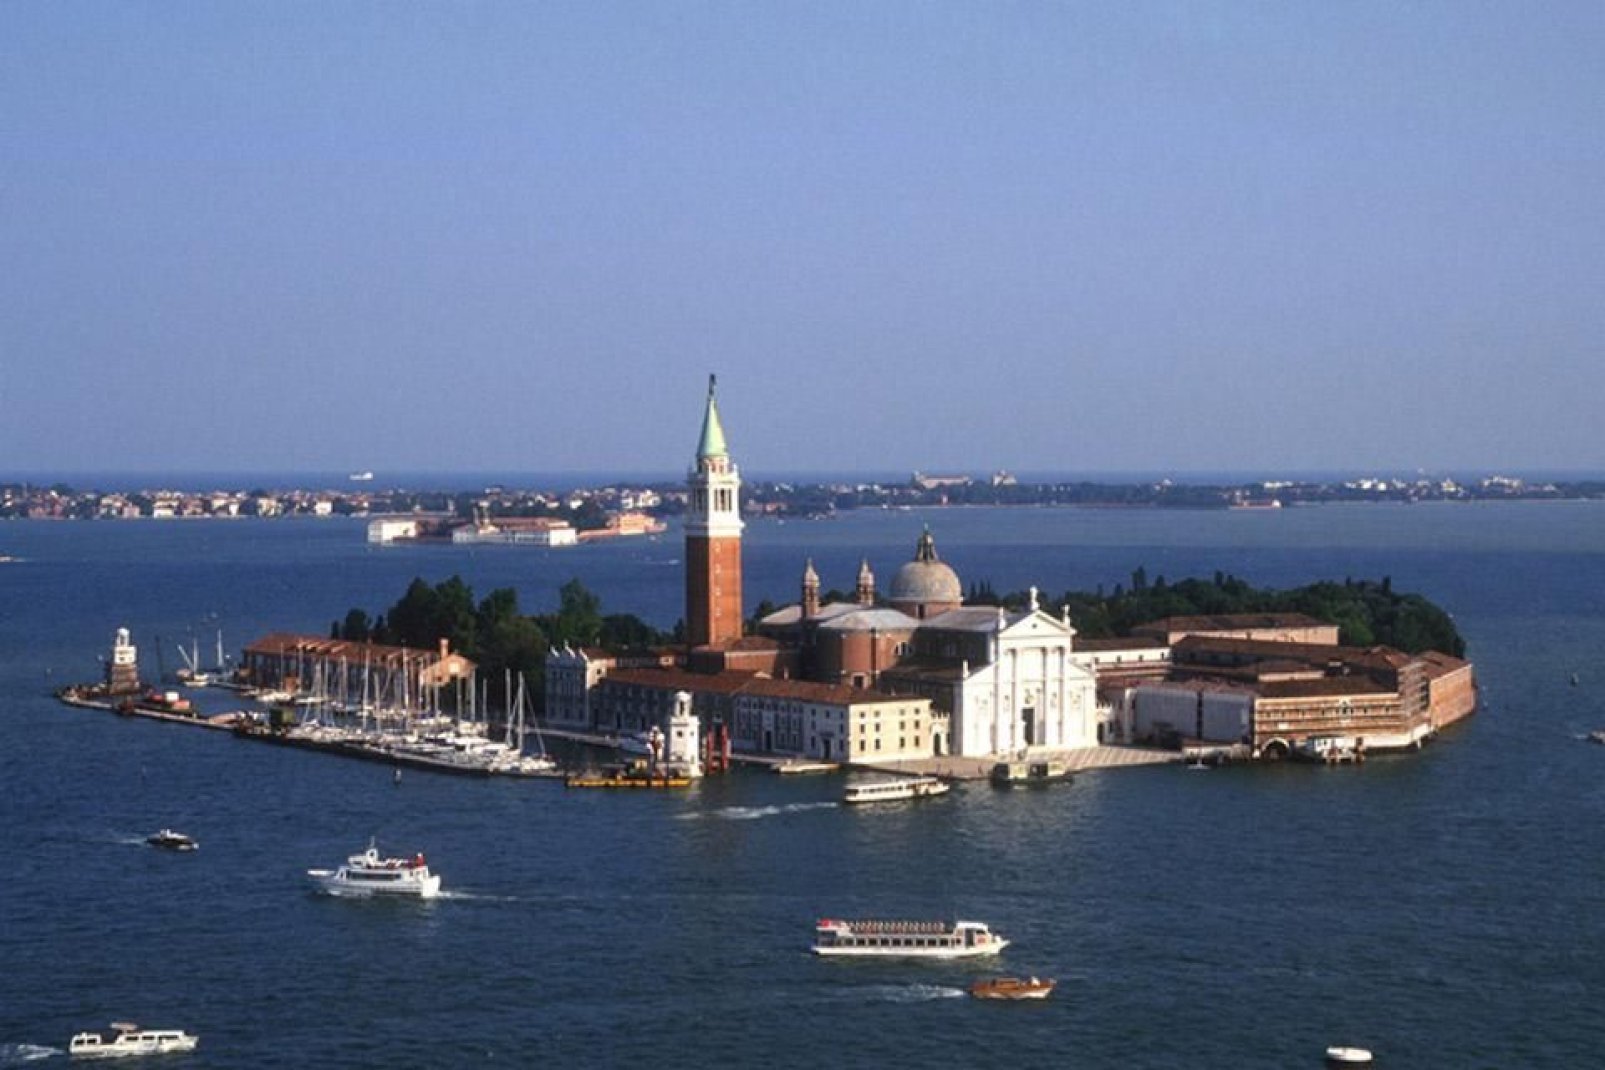 La isla de San Giorgio Maggiore está situada frente a la plaza de San Marcos y en ella se encuentra la basílica homónima.